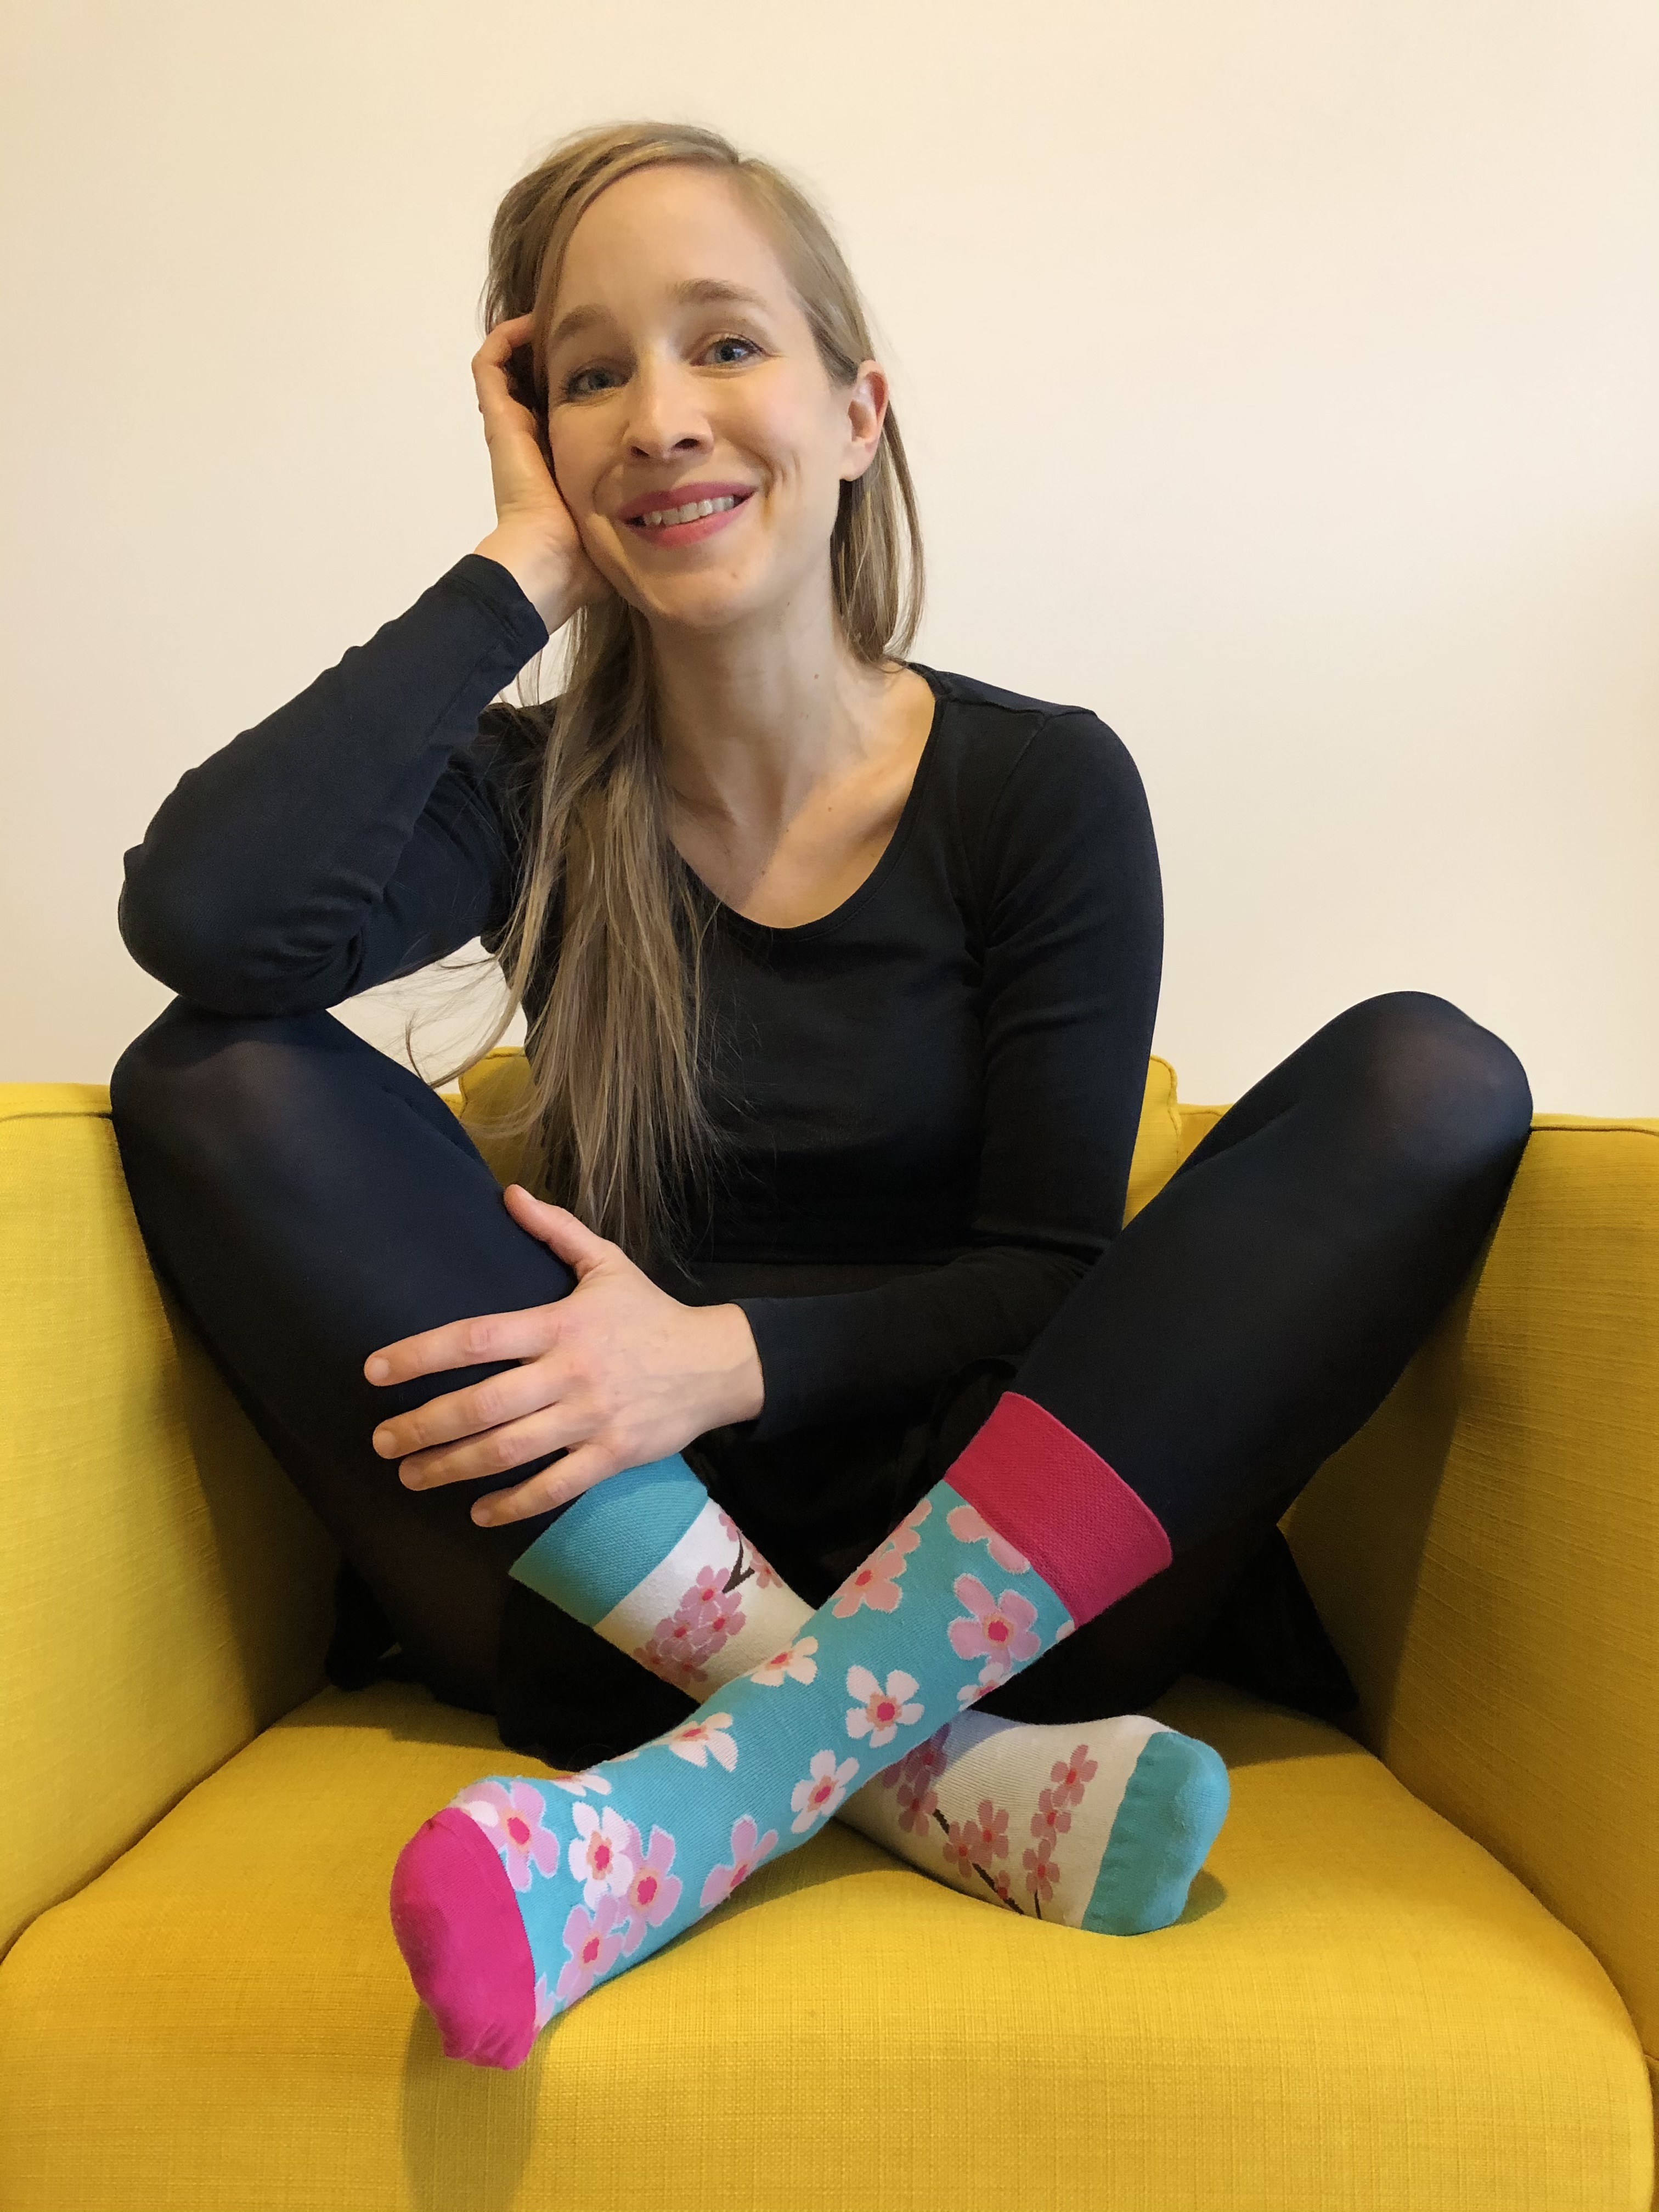 Ismert emberek húznak felemás zoknit a Down-szindróma világnapján - Blikk